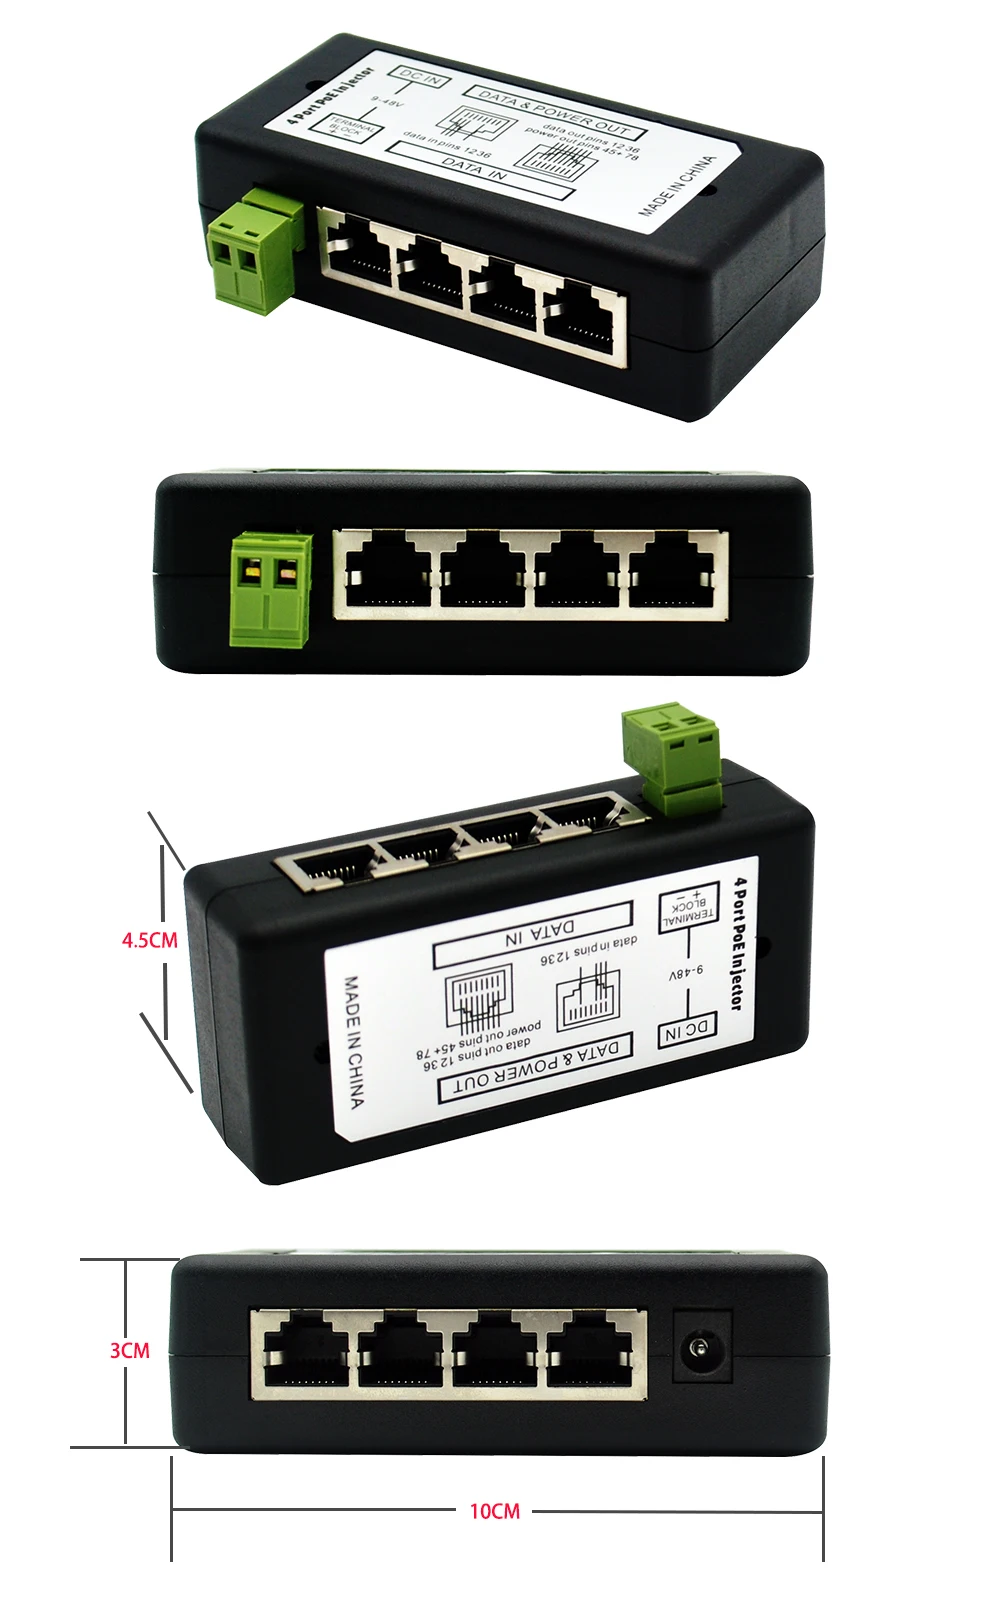 SSICON 2 шт. 4 порта 8 портов POE инжектор POE сплиттер 12-48 В для CCTV сети POE камеры питания через Ethernet IEEE802.3af